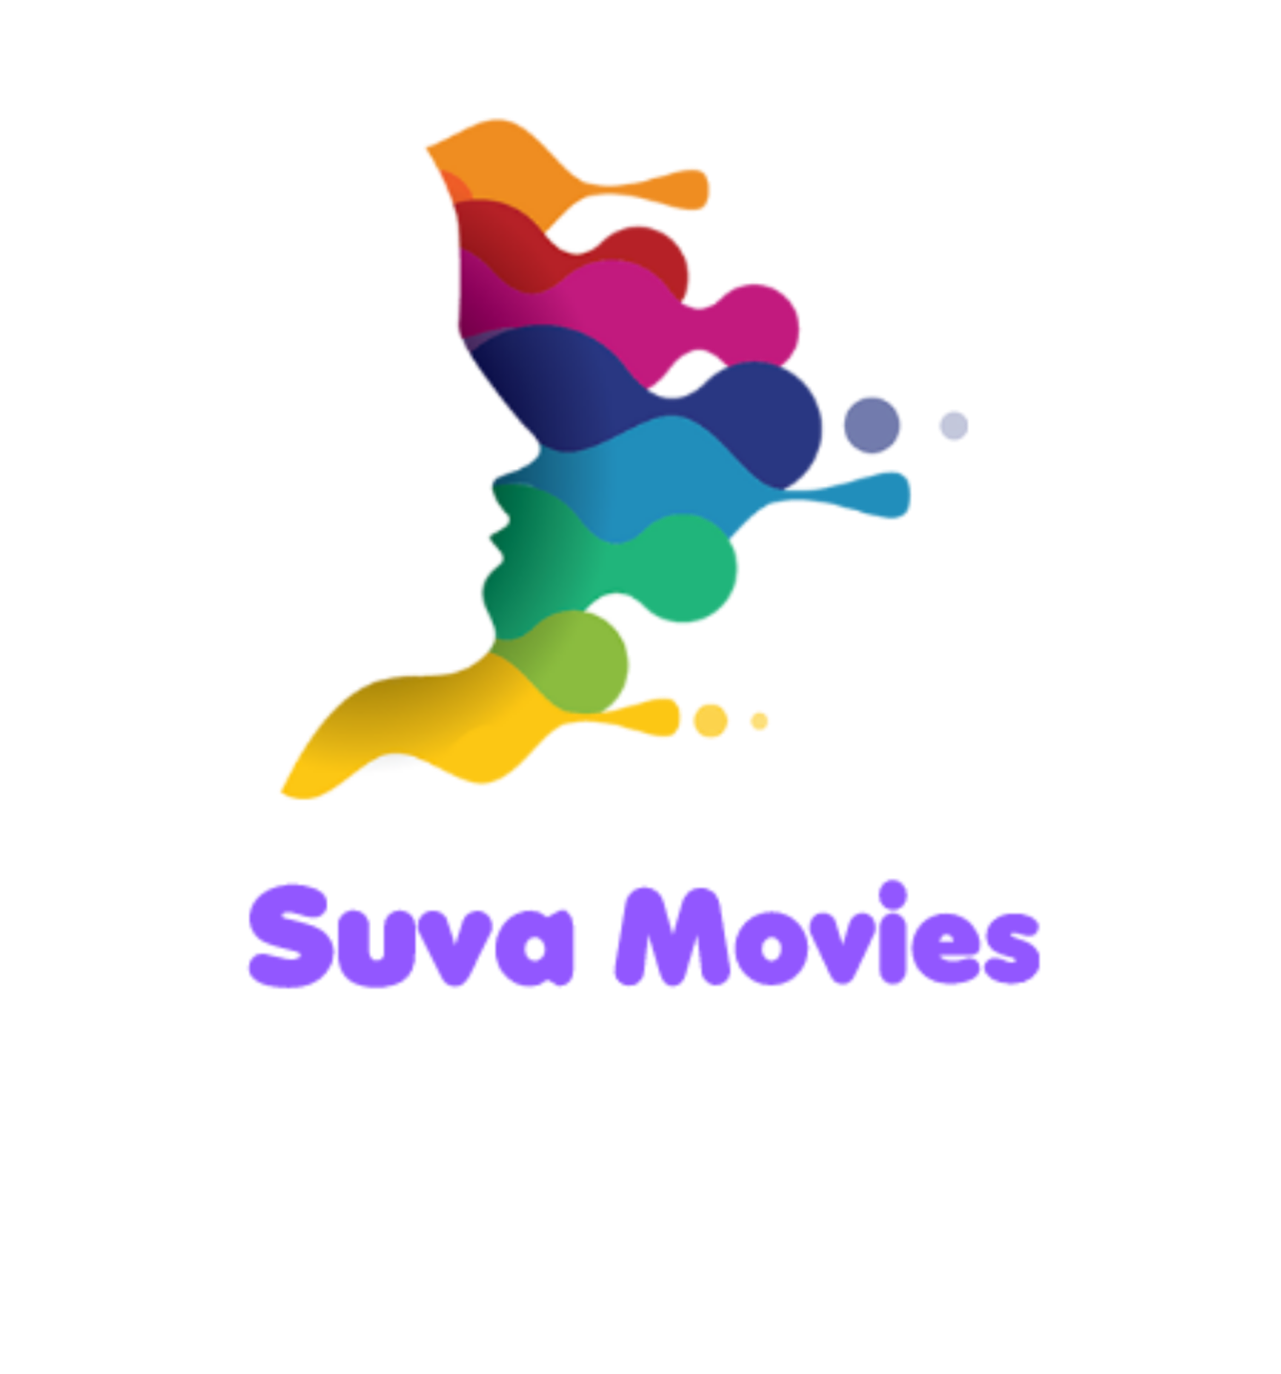 Suva Movies